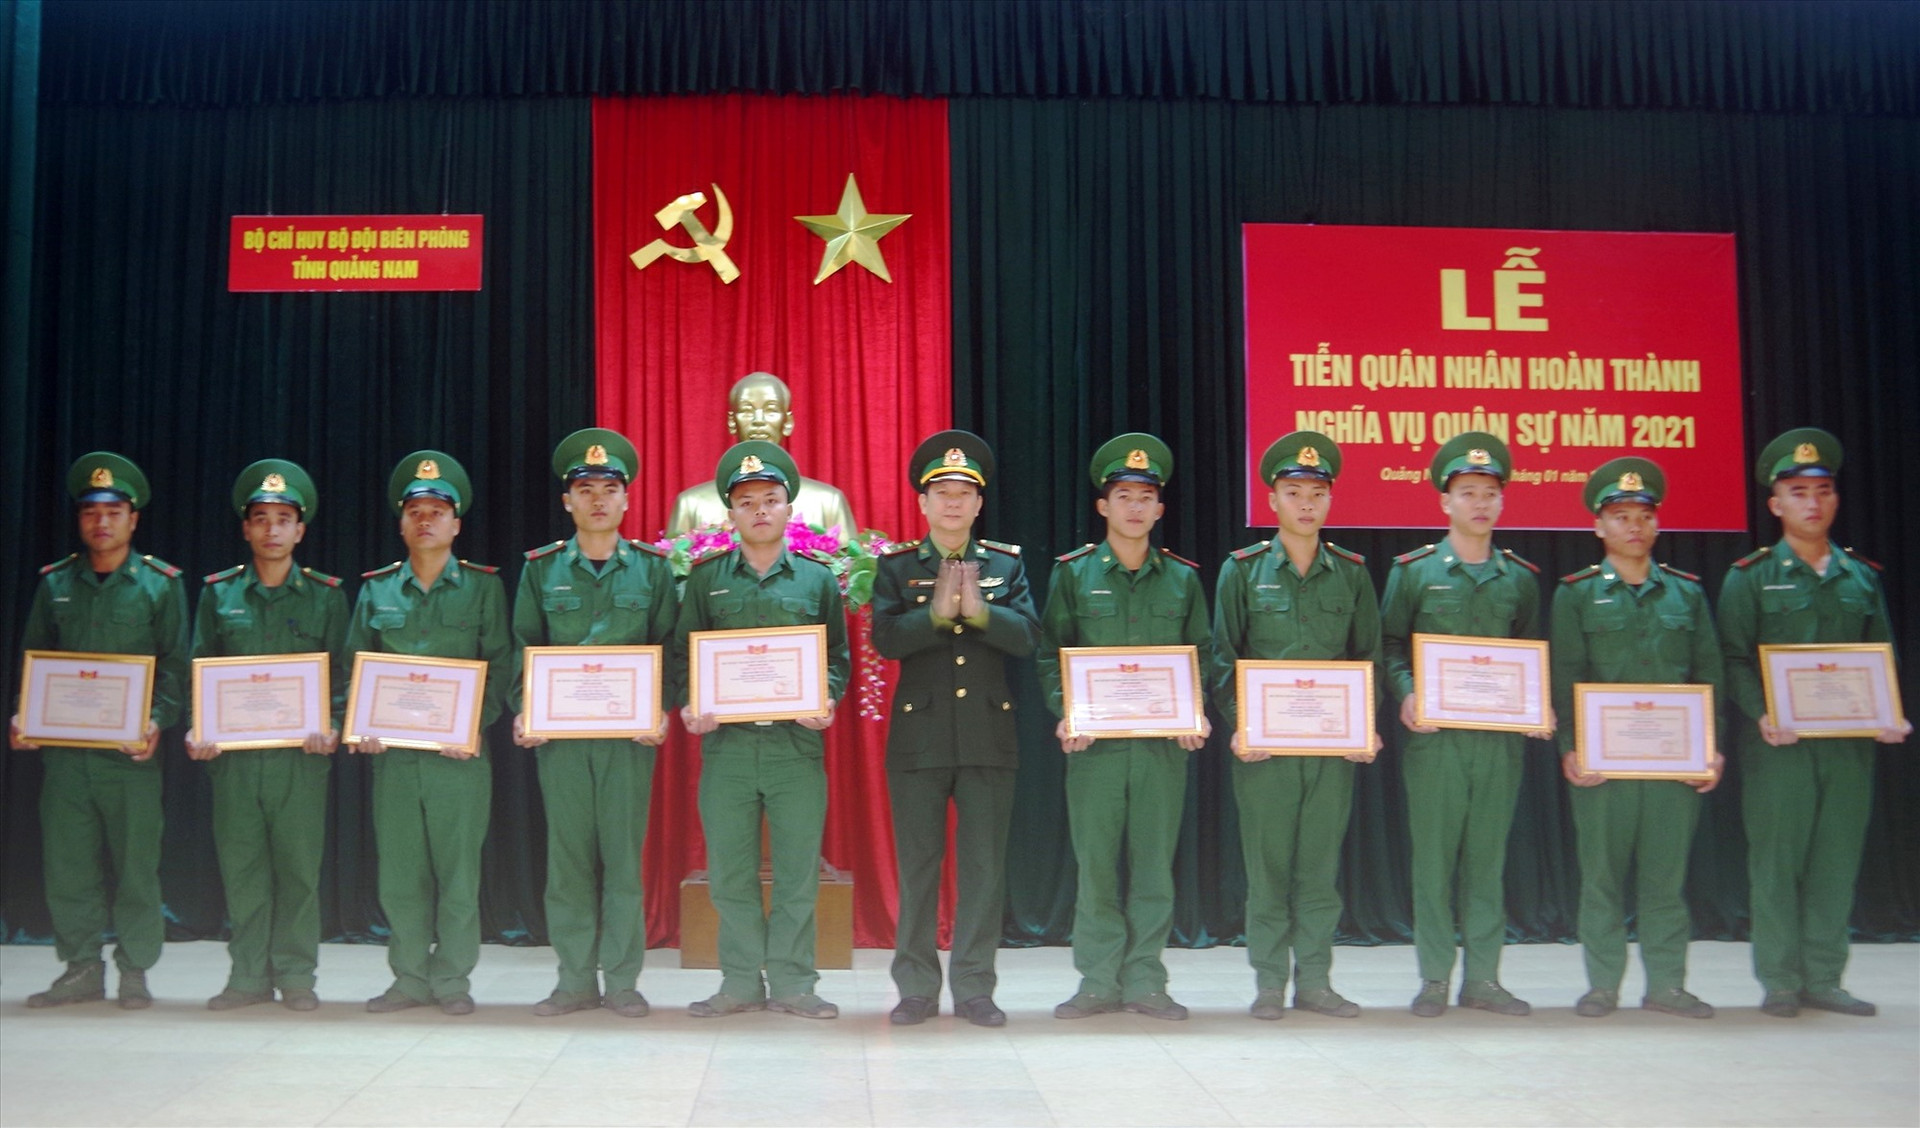 Thượng tá Chử Hồng Phong - Phó Chỉ huy trưởng, Bộ Chỉ huy BĐBP tỉnh Trao tặng giấy khen cho các chiến sĩ xuất ngũ năm 2021. Ảnh: Thái Tùng